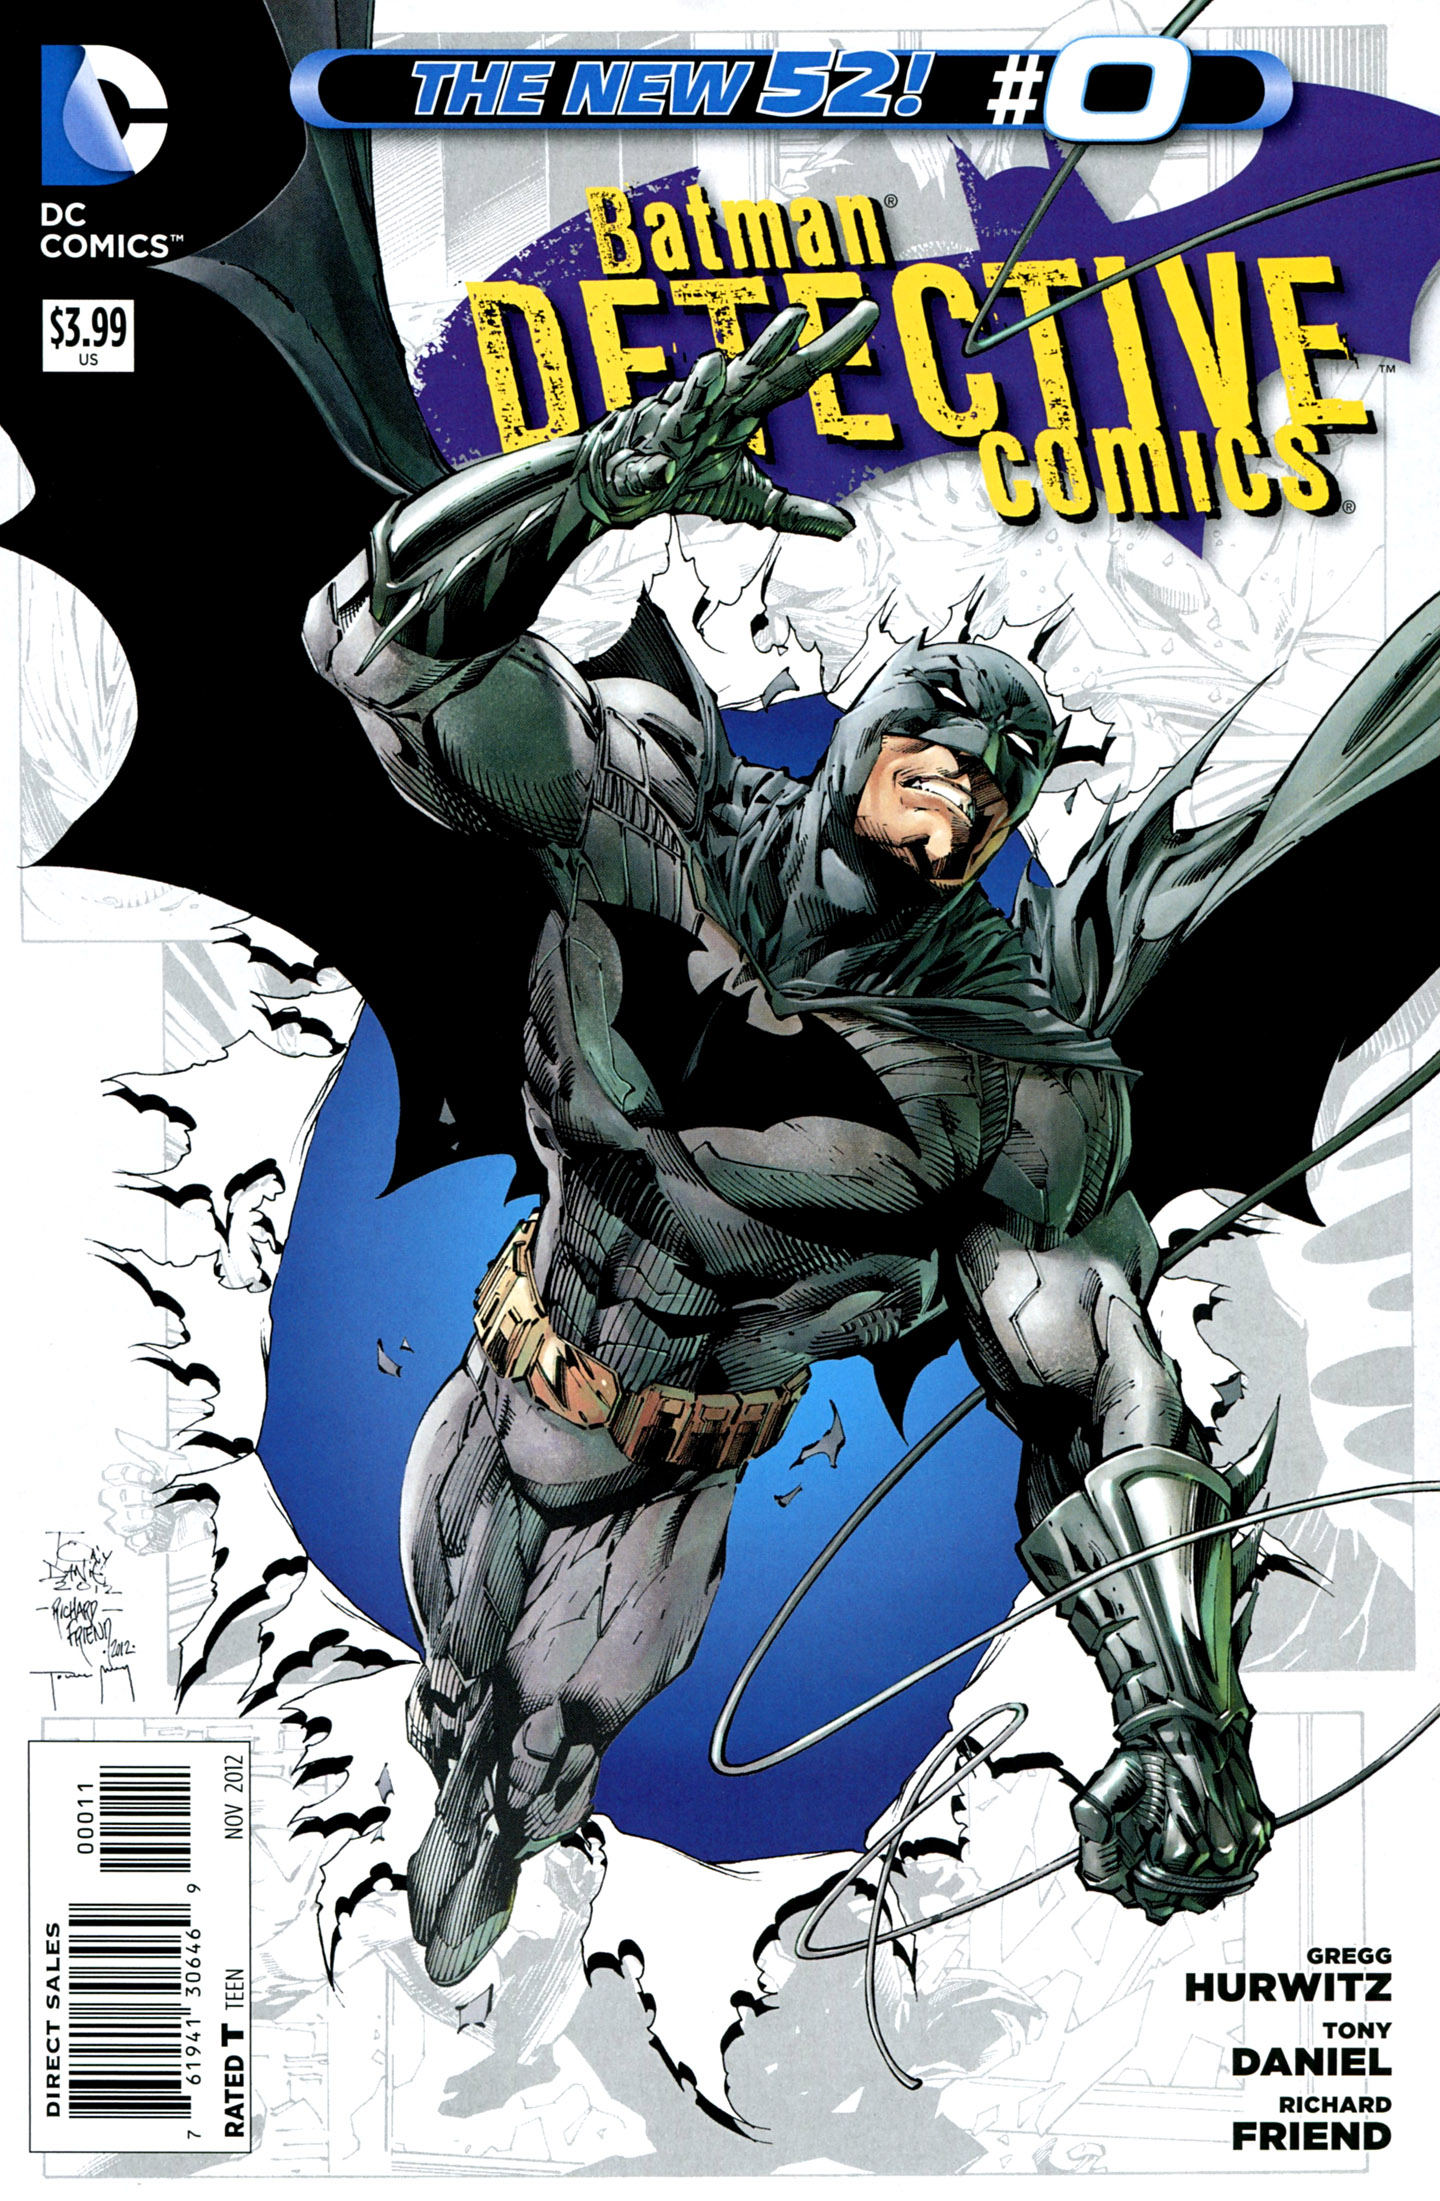 Detective Comics Vol. 2 #0